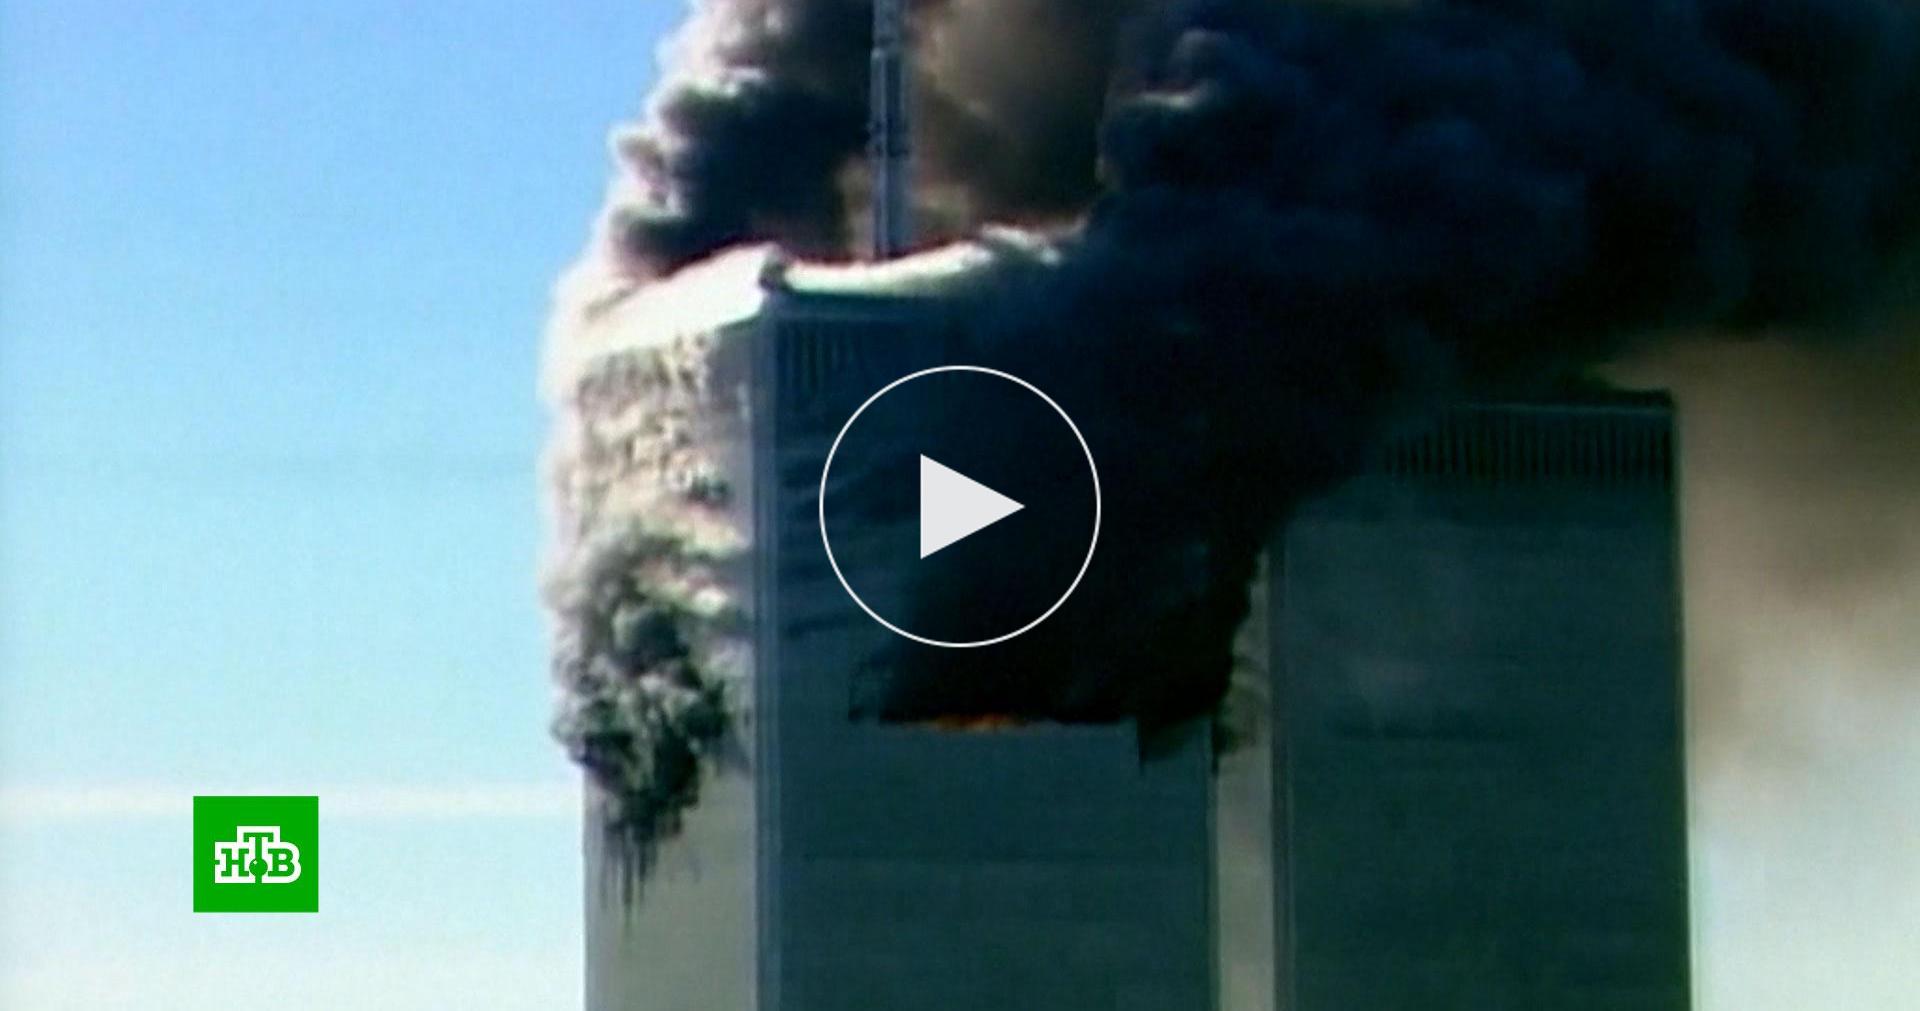 Разговор 11 сентября. Самый масштабный теракт в мире. Парк погибшим пожарникам 11 сентября.